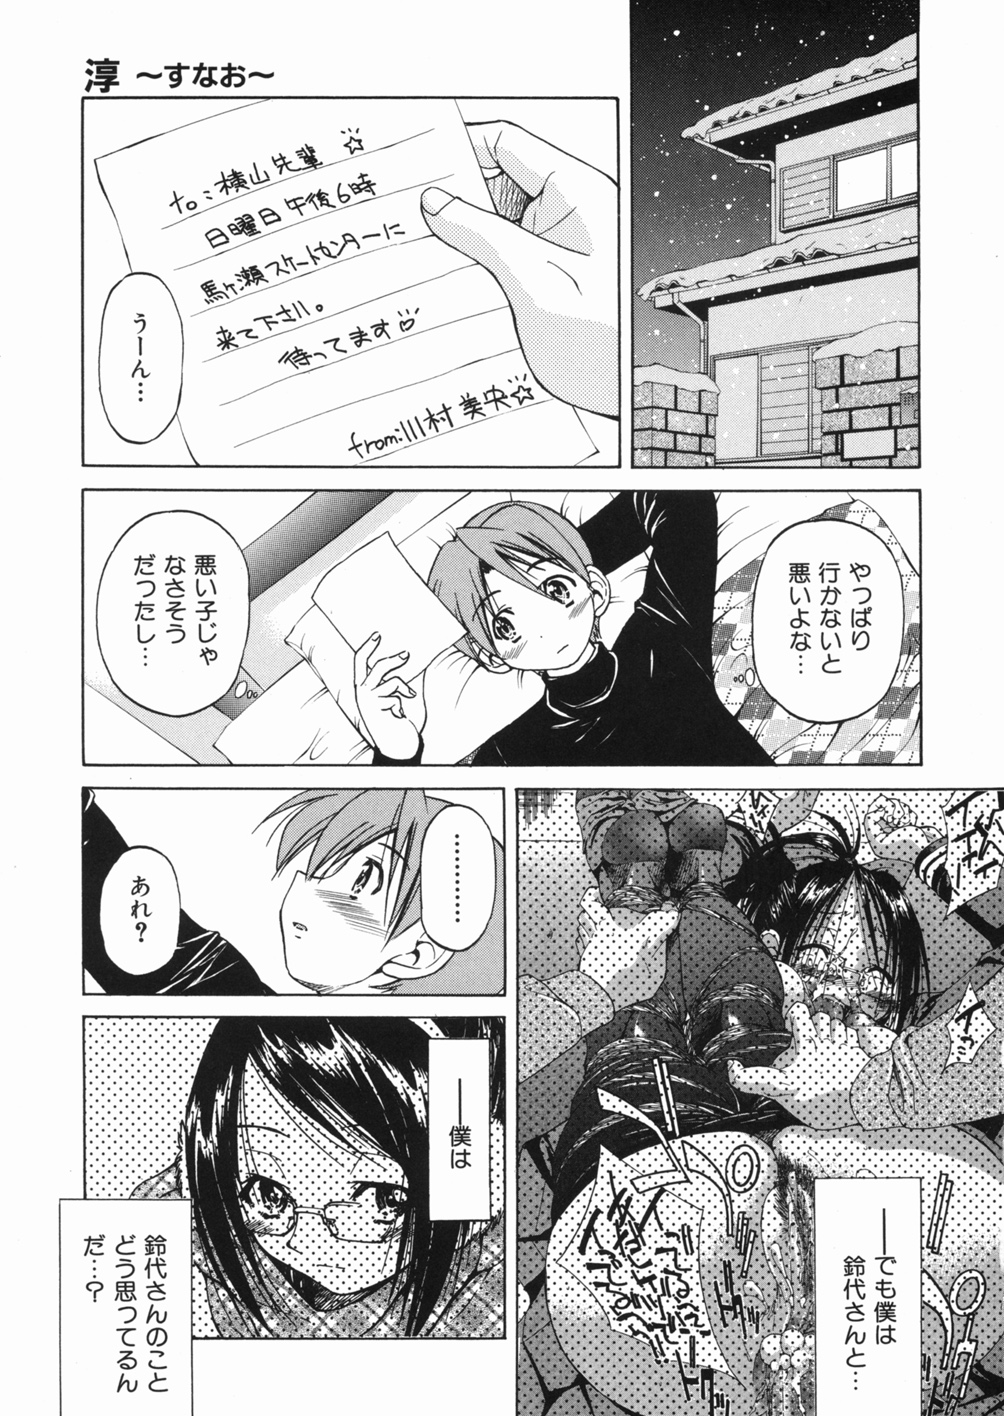 [Inoue Yoshihisa] Sunao page 39 full